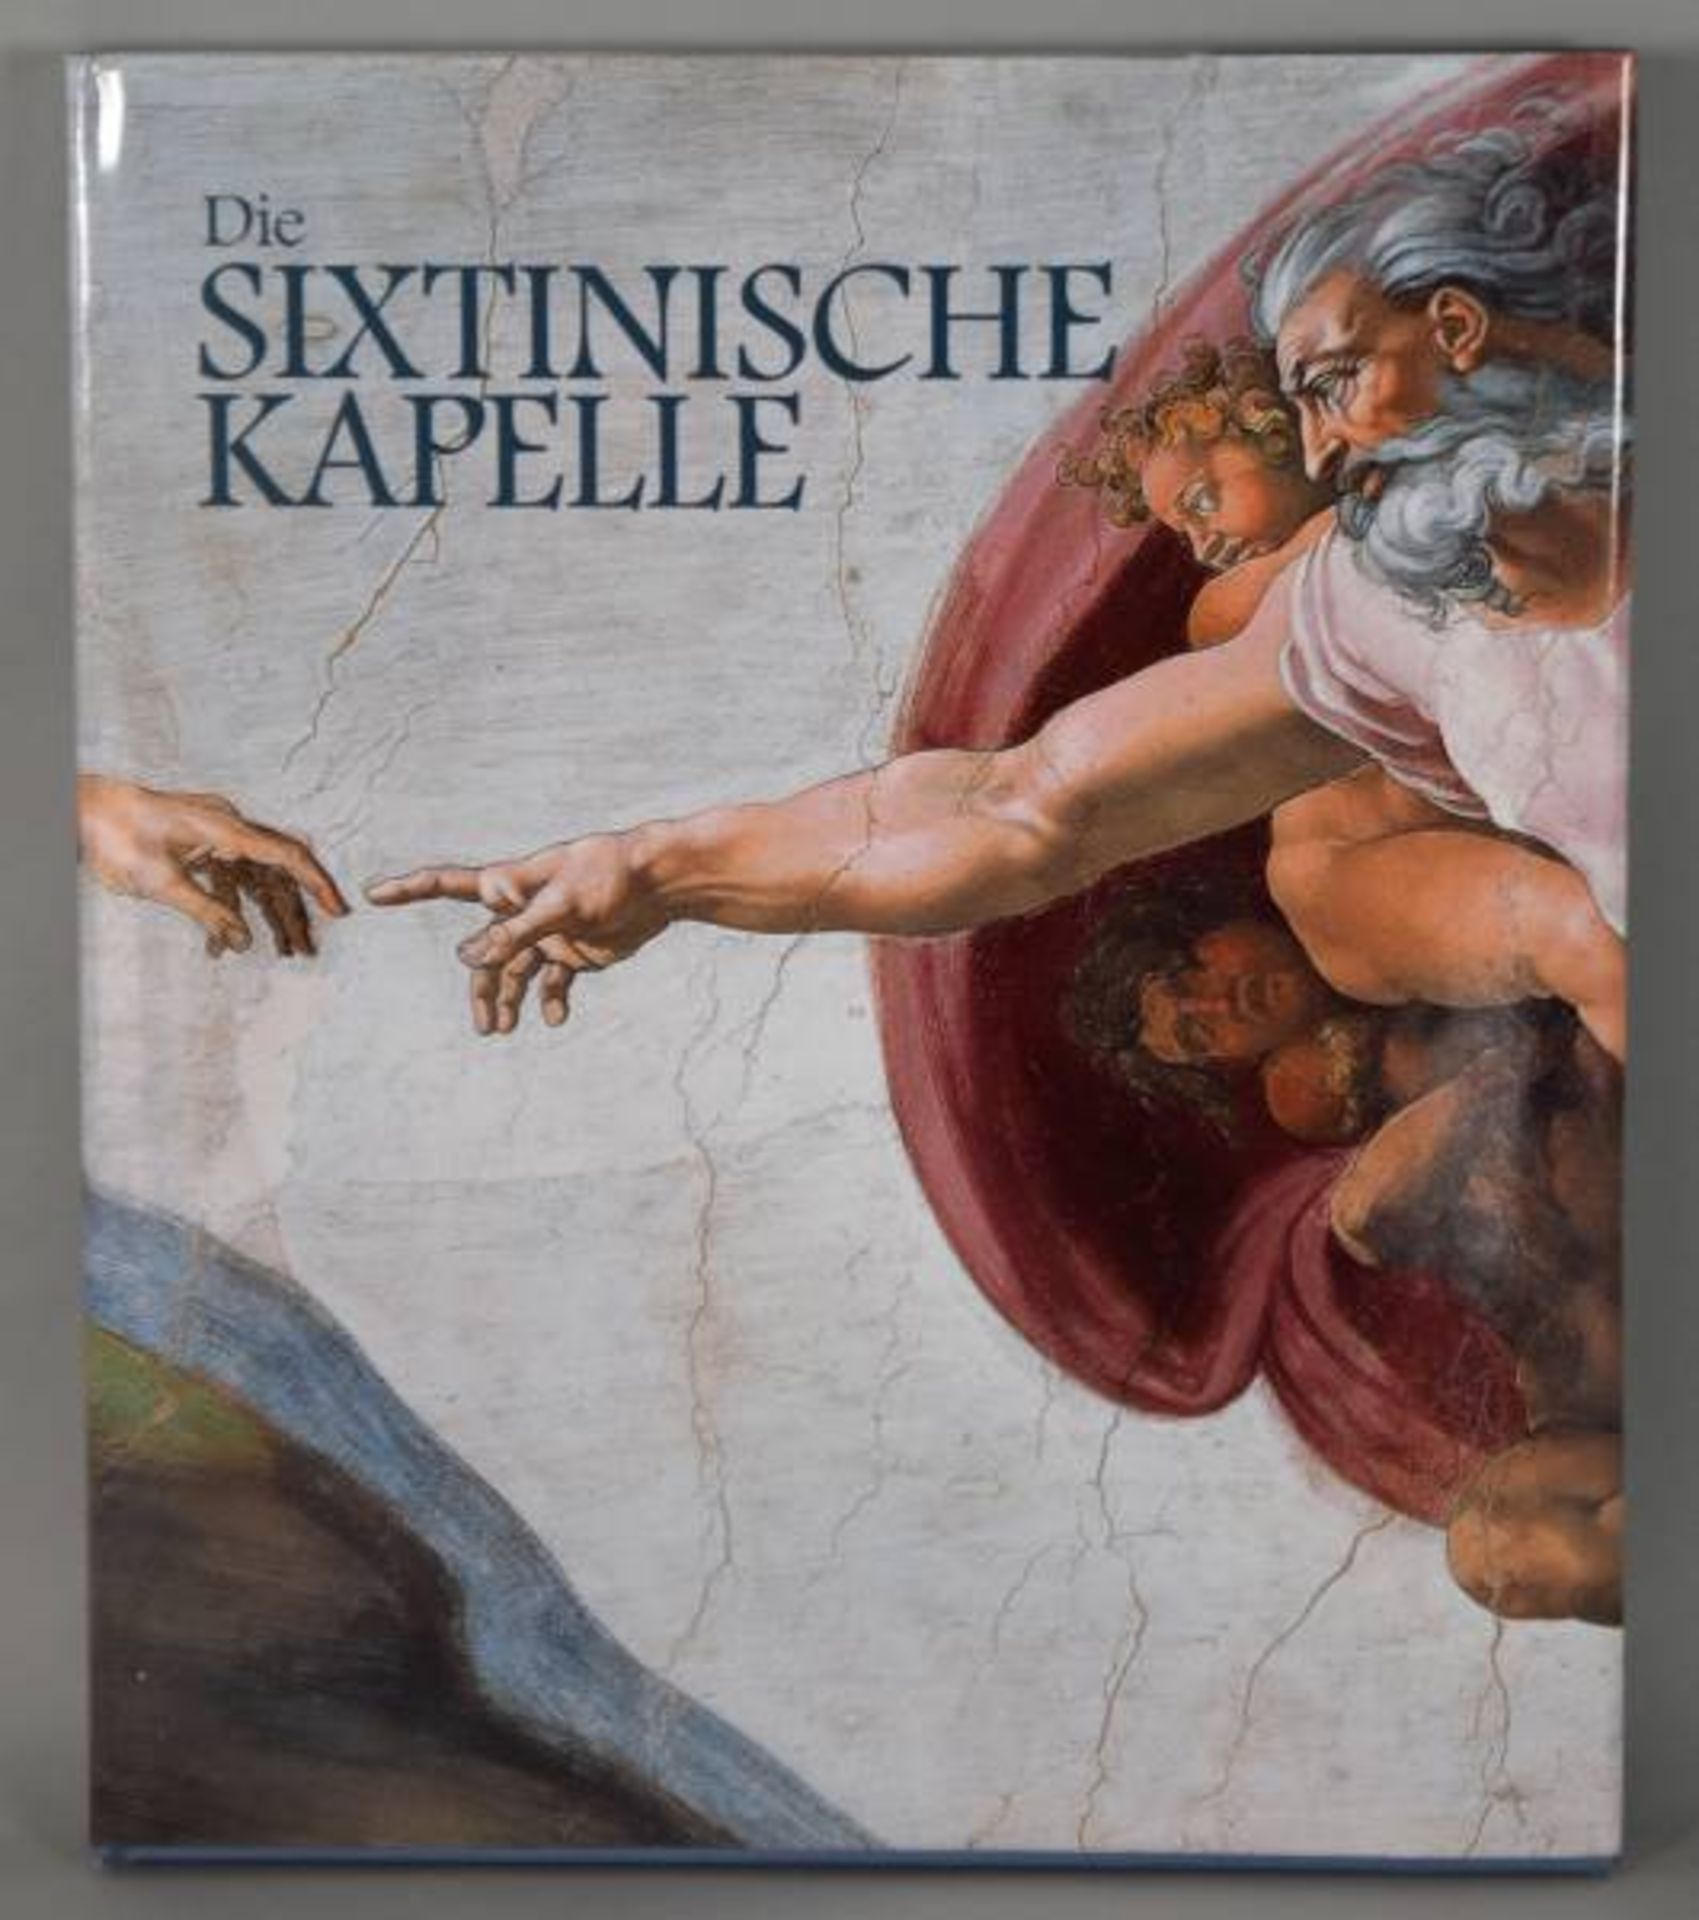 KUNSTBUCH "Die Sixtinische Kapelle", Florenz 2011KUNSTBUCH "Die Sixtinische Kapelle", Florenz 2011